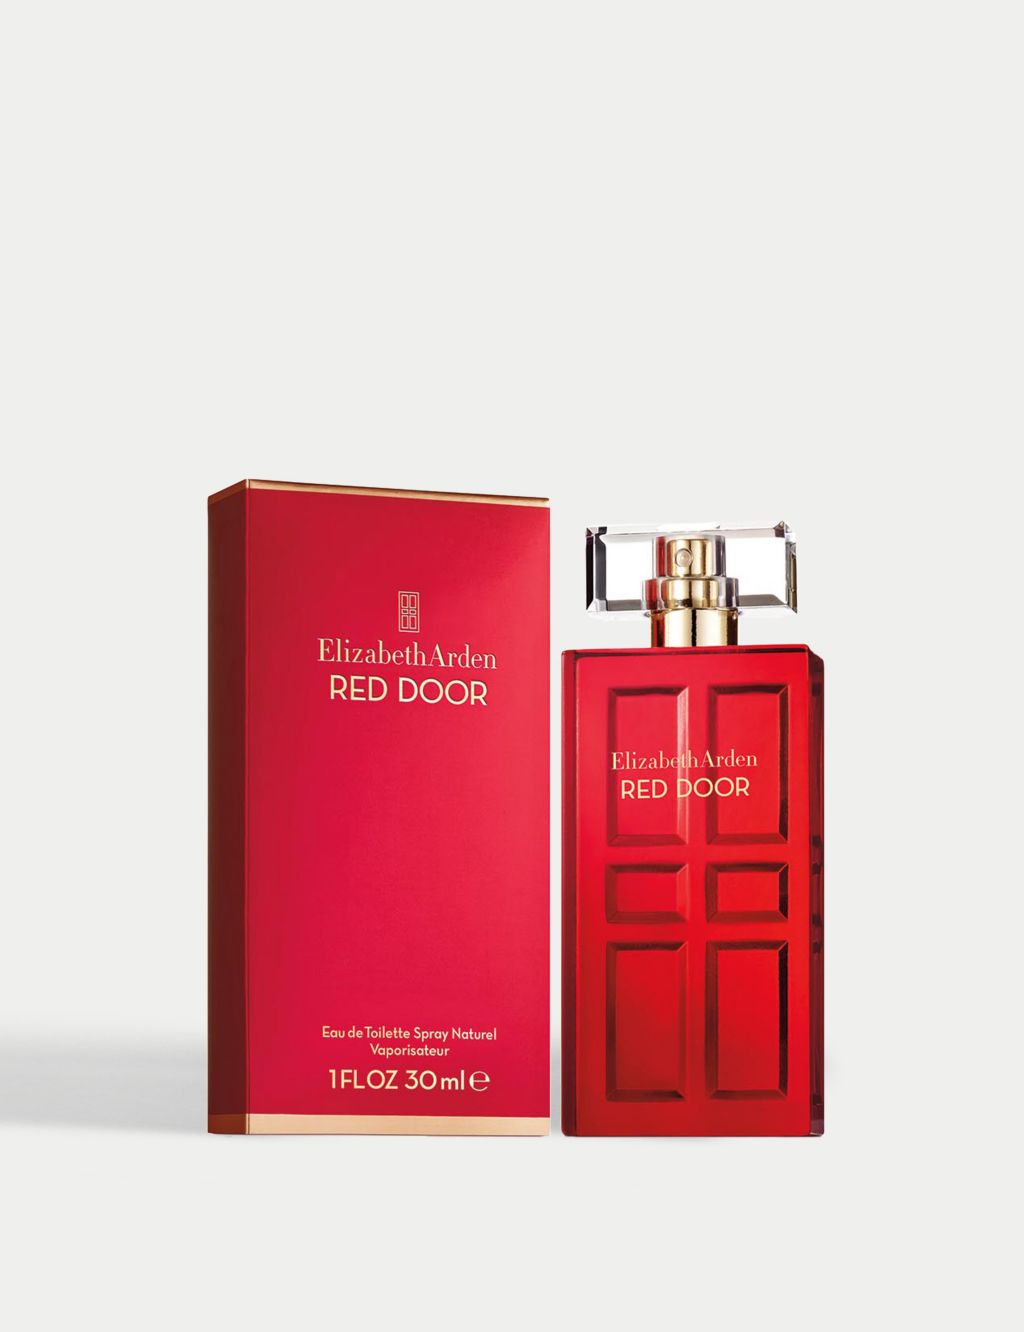 Elizabeth Arden Red Door Eau de Toilette Spray Naturel, Perfume for Women, 30ml